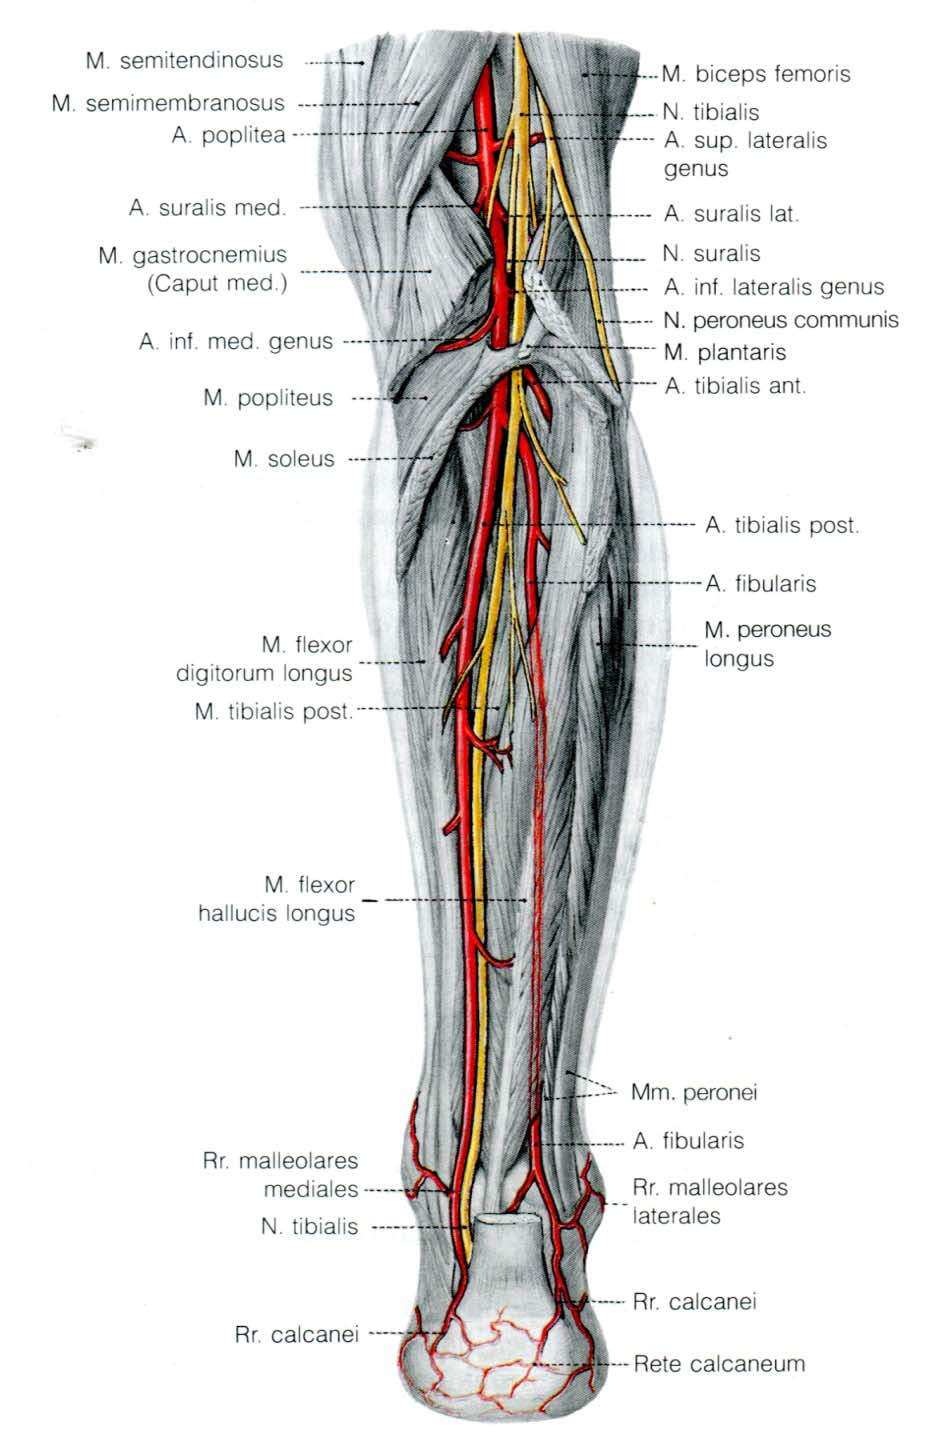 Arterien aus: Benninghoff "Anatomie" 6 In der Kniekehle heisst die Arterie, die am Oberschenkel noch Arteria femoralis hiess, nun Arteria poplitea, Arterie